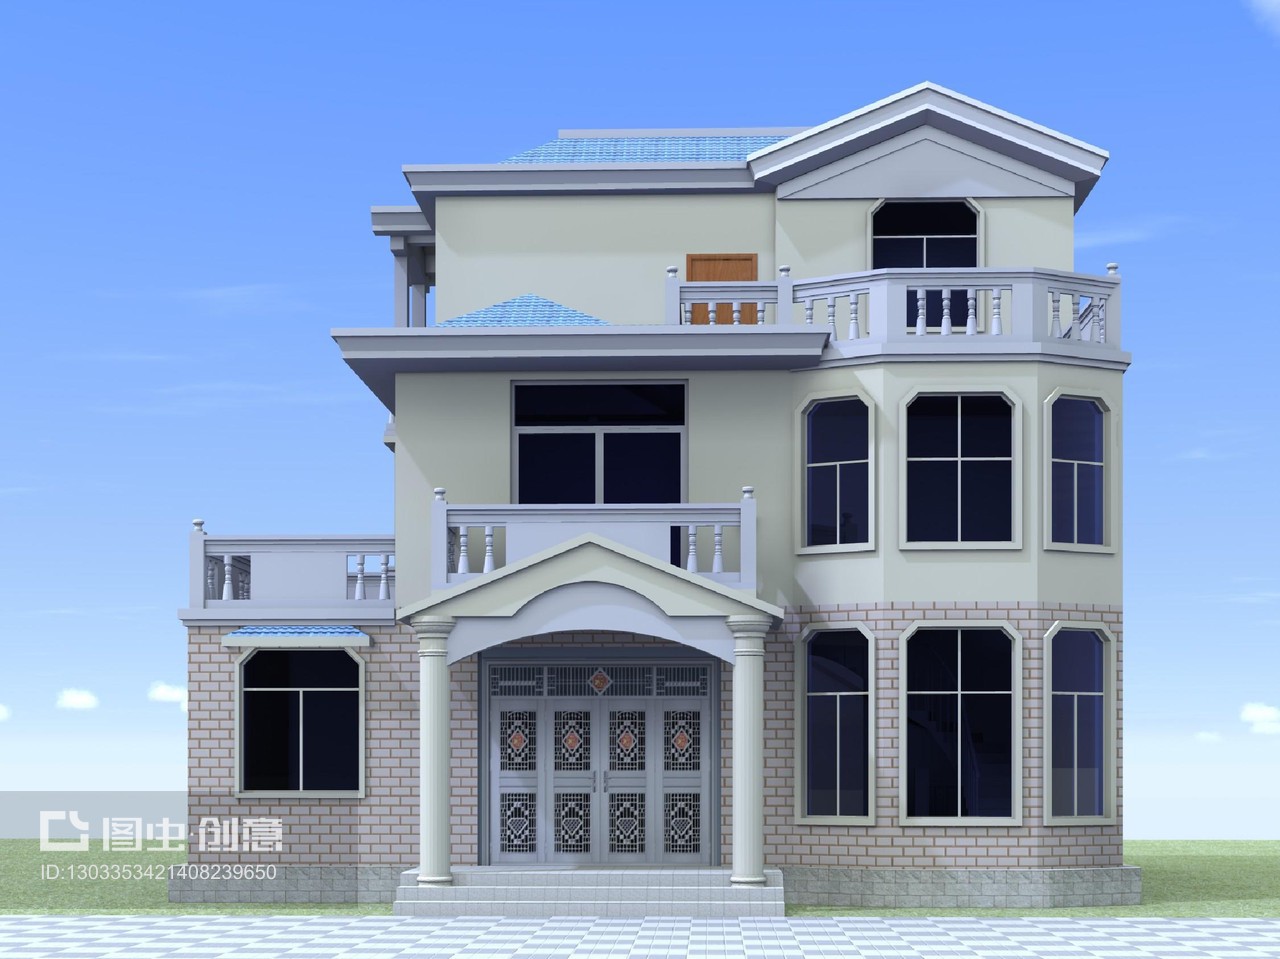 两层半新农村别墅设计图建筑图结构图效果图